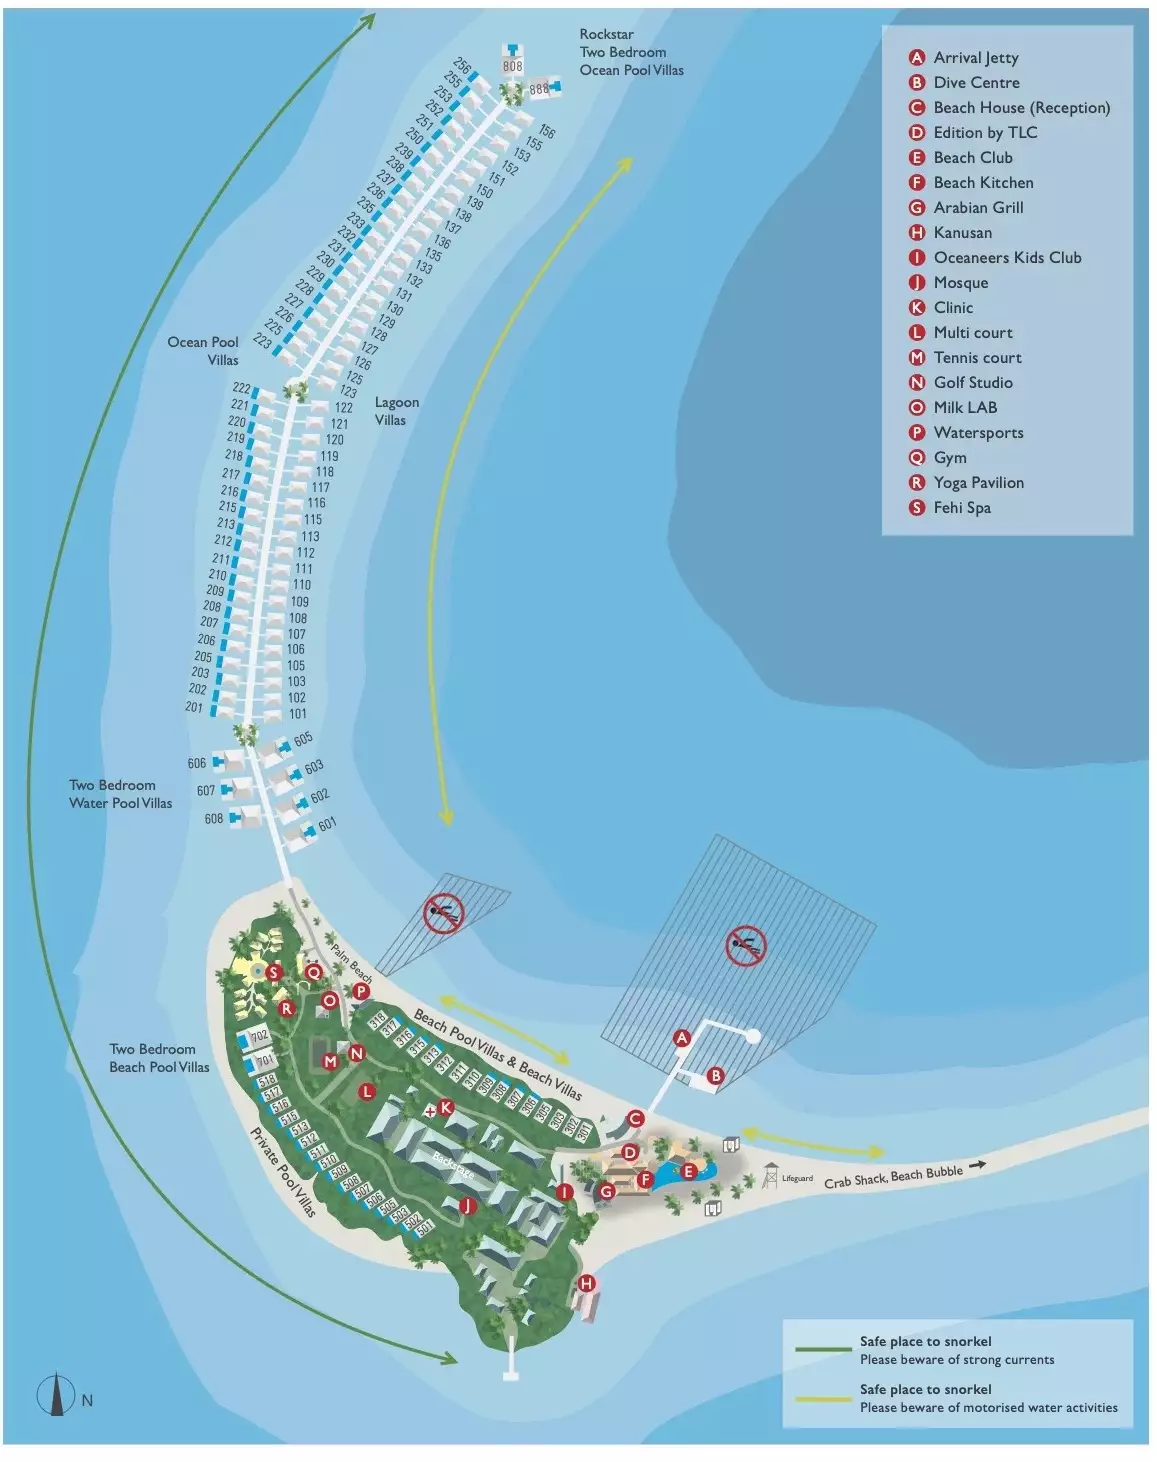 Finolhu-Baa-Atoll-Island-Map-cropped.jpg